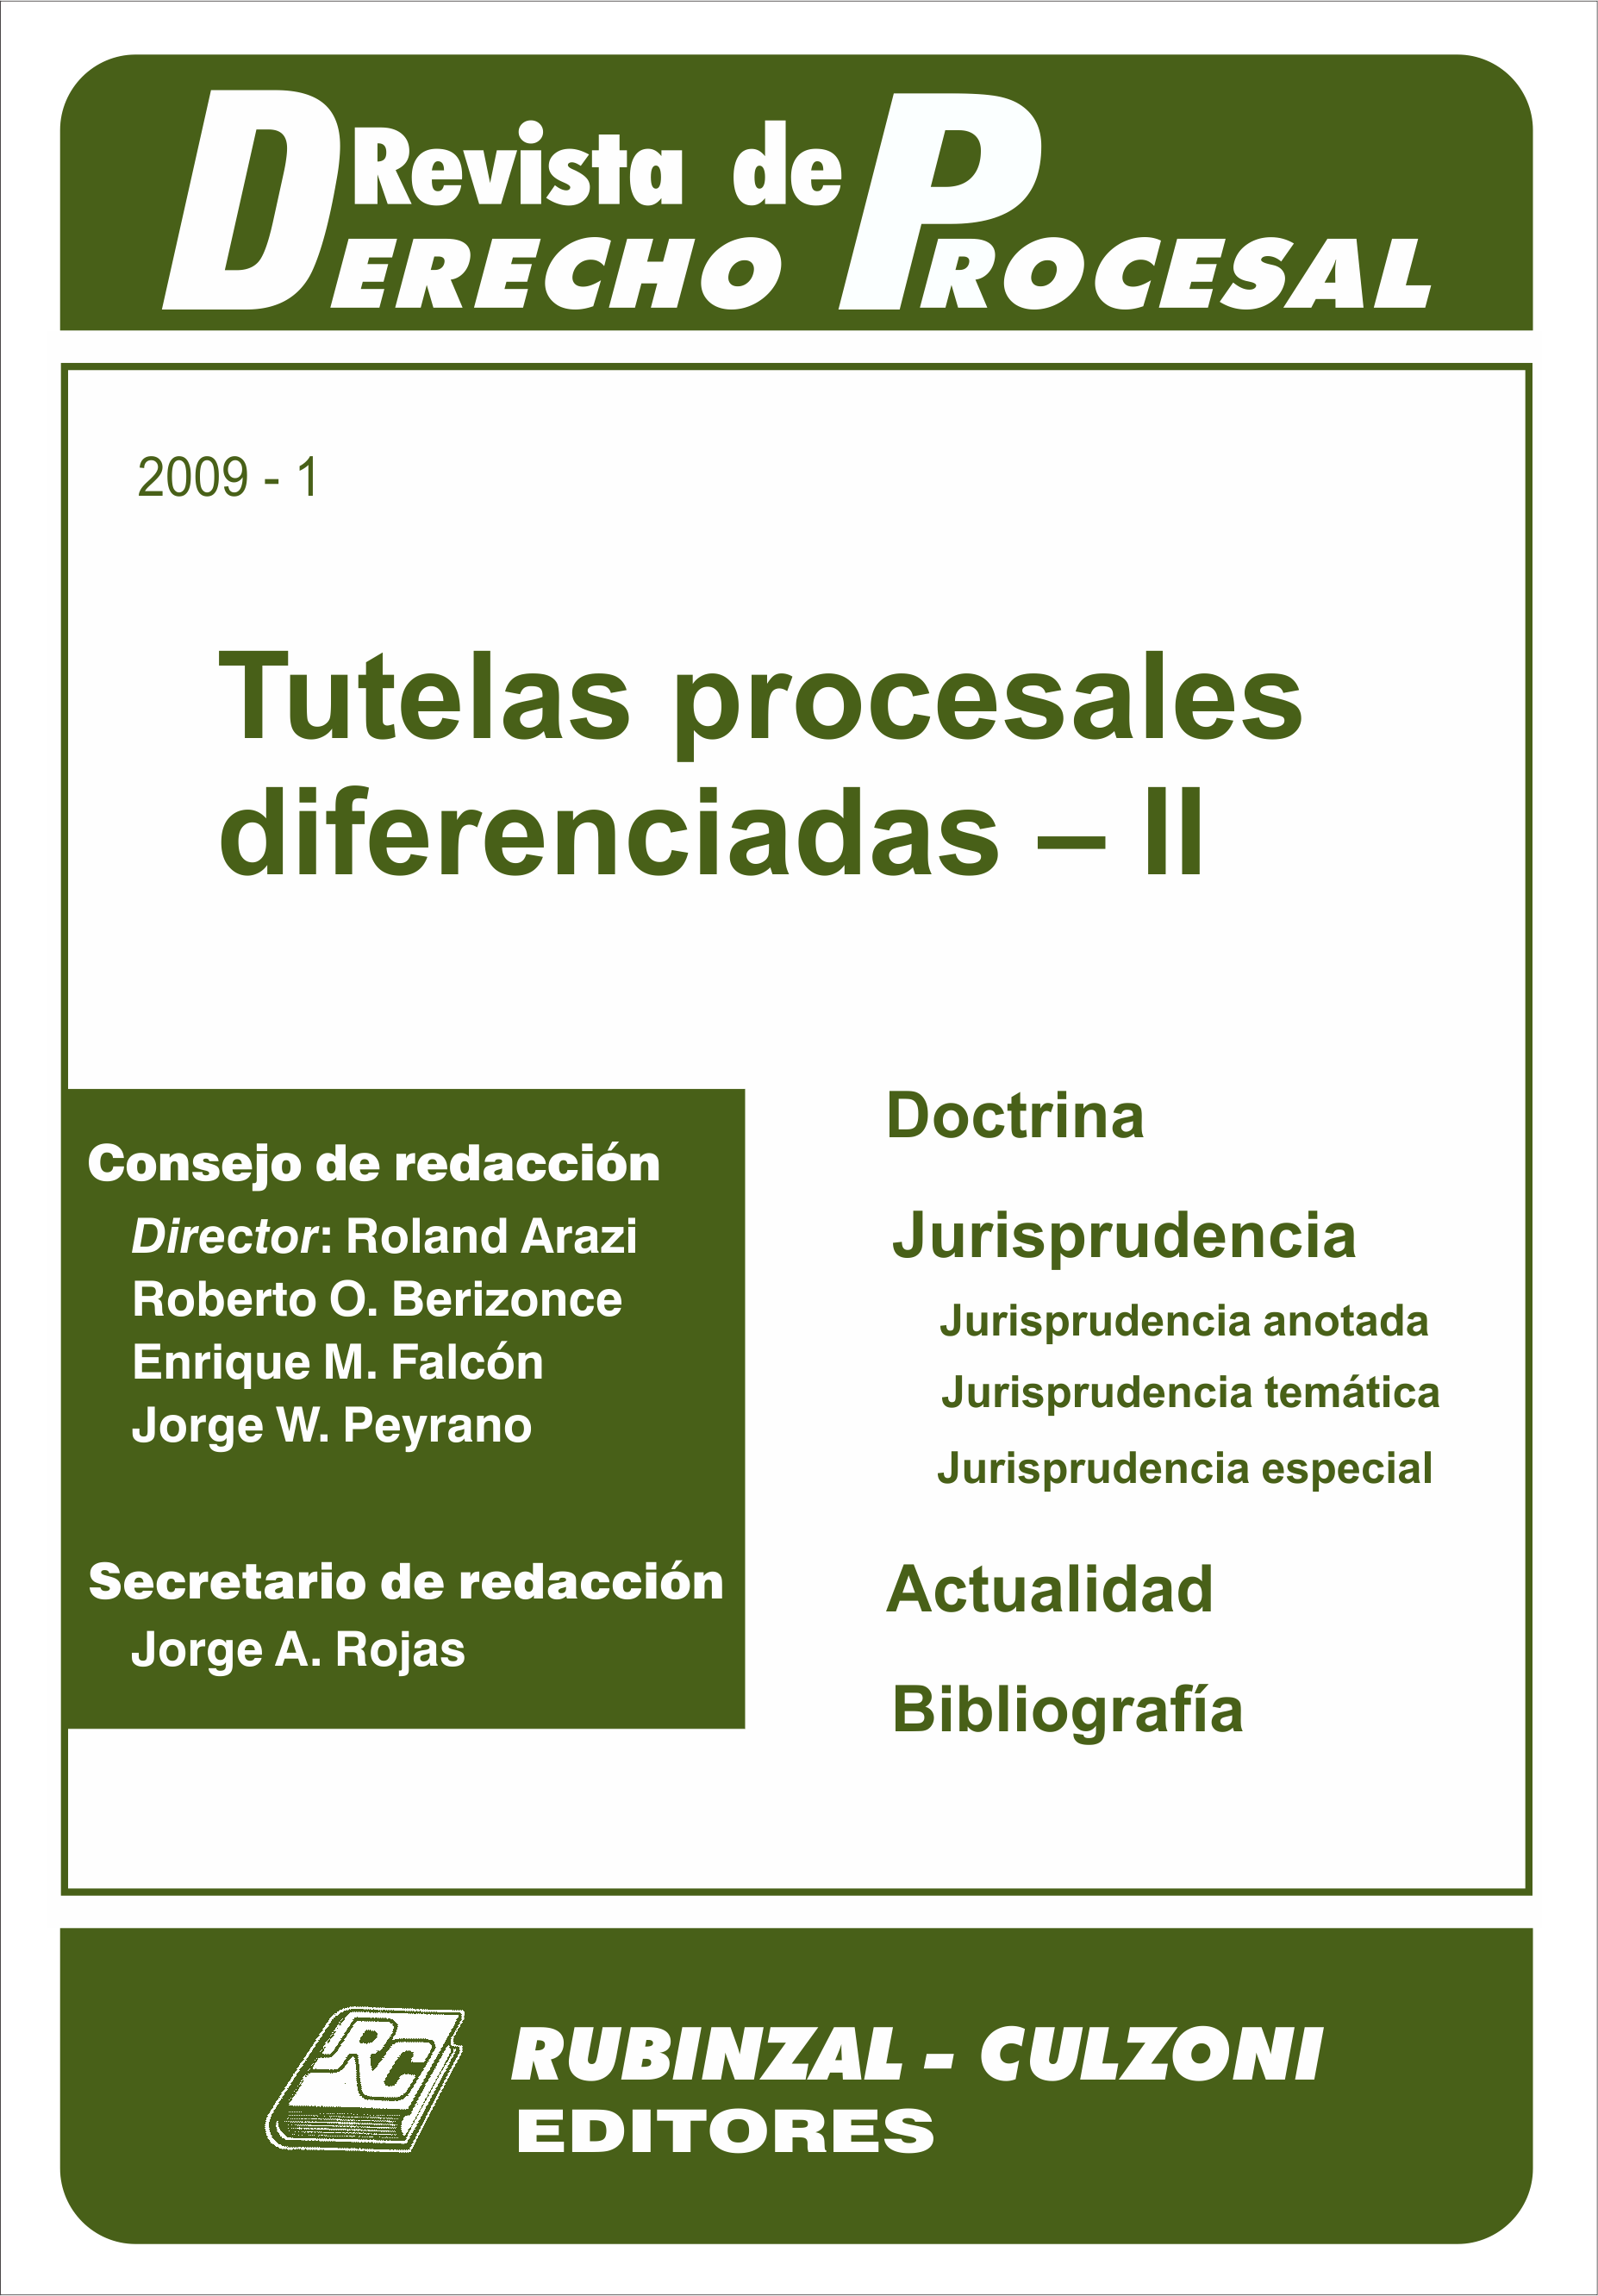  - Tutelas procesales diferenciadas - II. [2009-1]